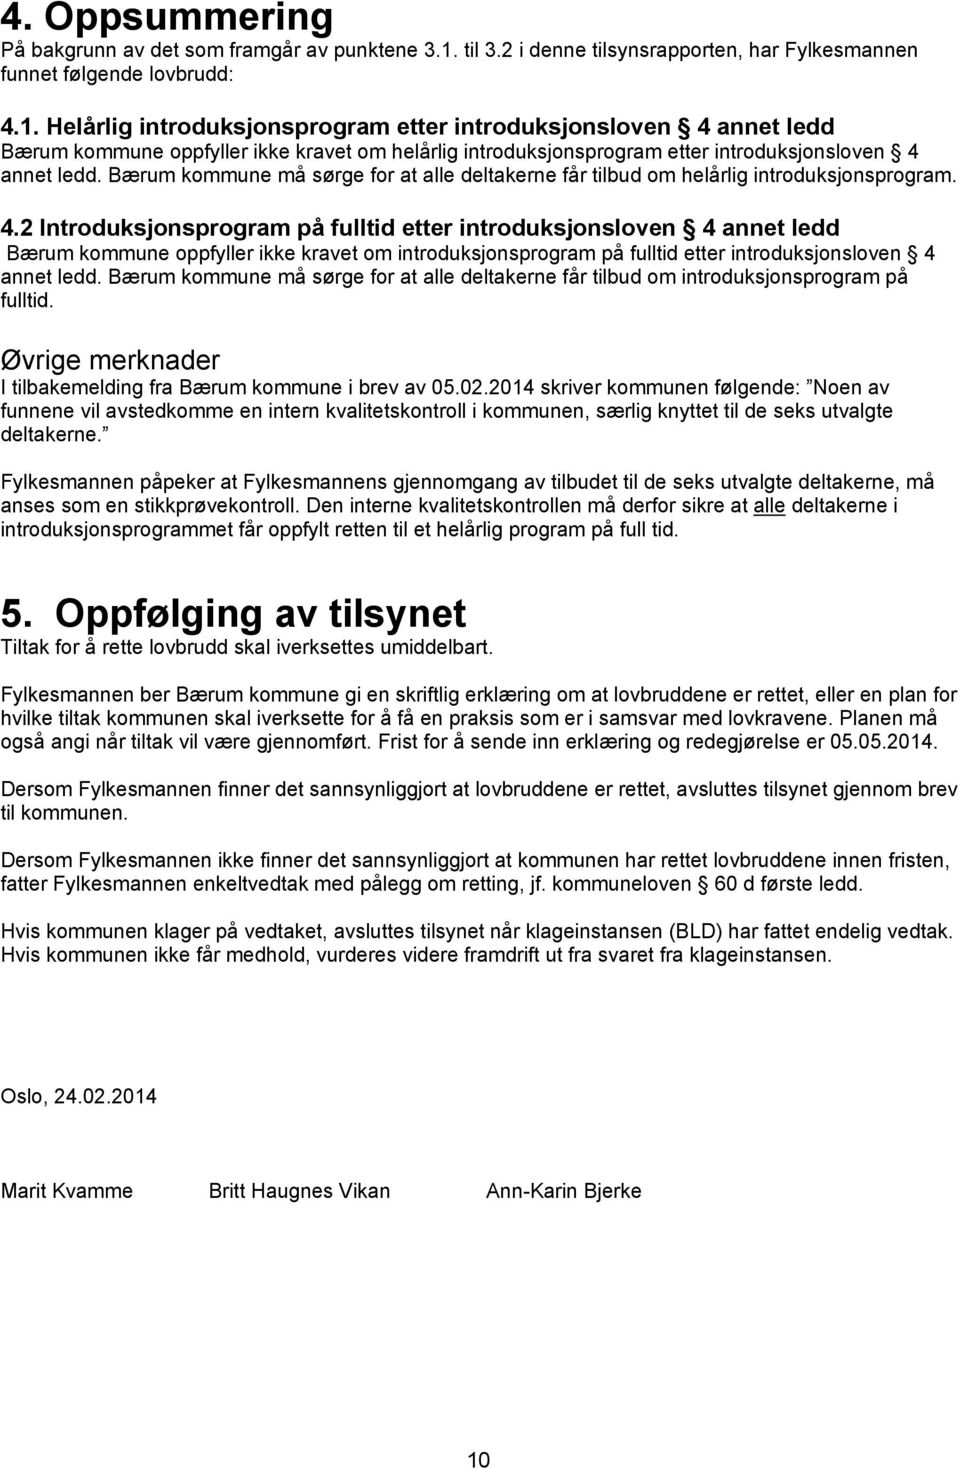 Helårlig introduksjonsprogram etter introduksjonsloven 4 annet ledd Bærum kommune oppfyller ikke kravet om helårlig introduksjonsprogram etter introduksjonsloven 4 annet ledd.